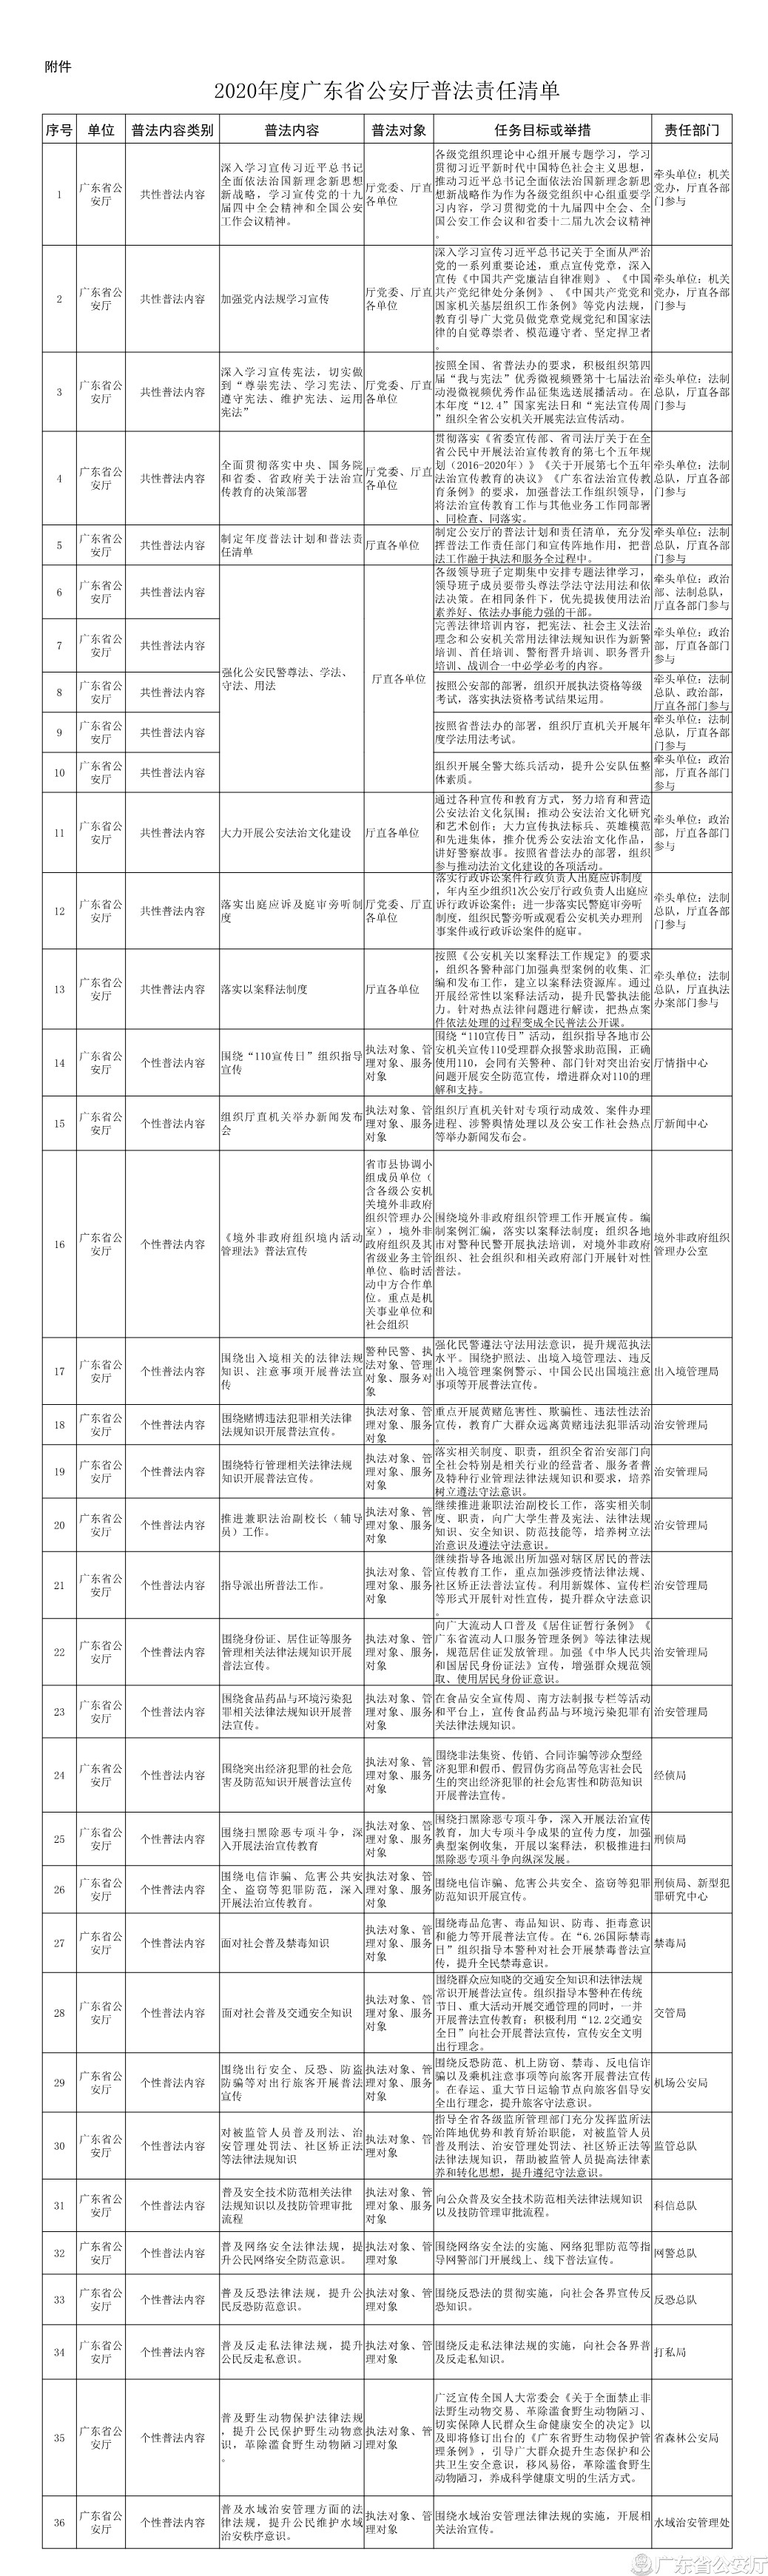 2020年度广东省公安厅普法责任清单.jpg